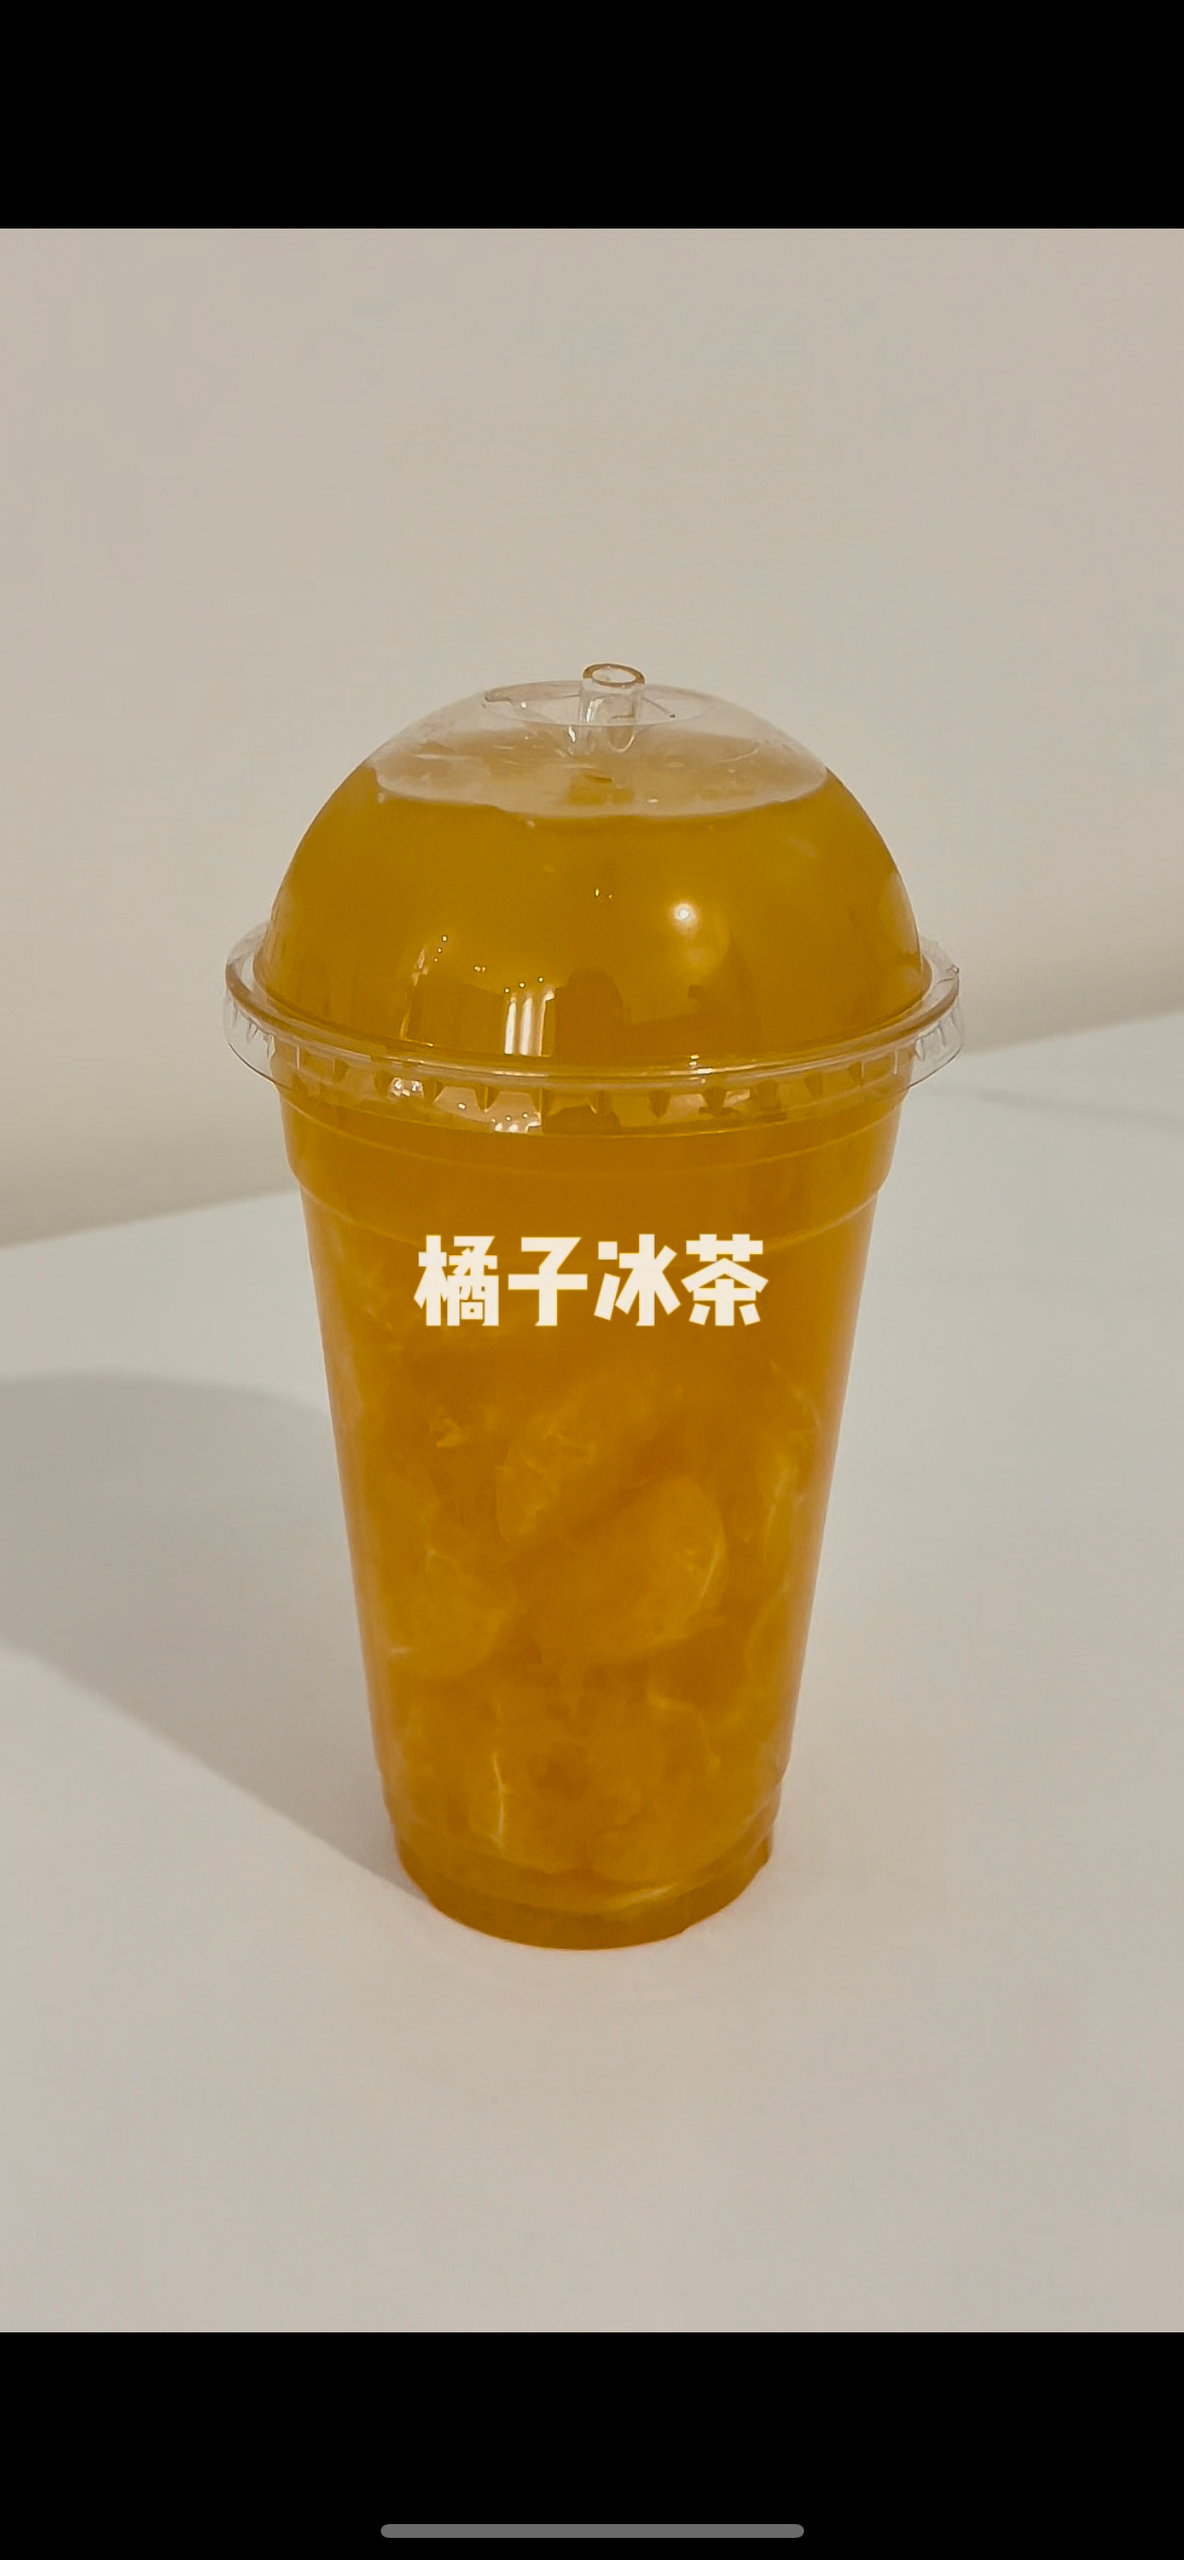 秋冬限定版橘子冰茶🍊好喝s了！